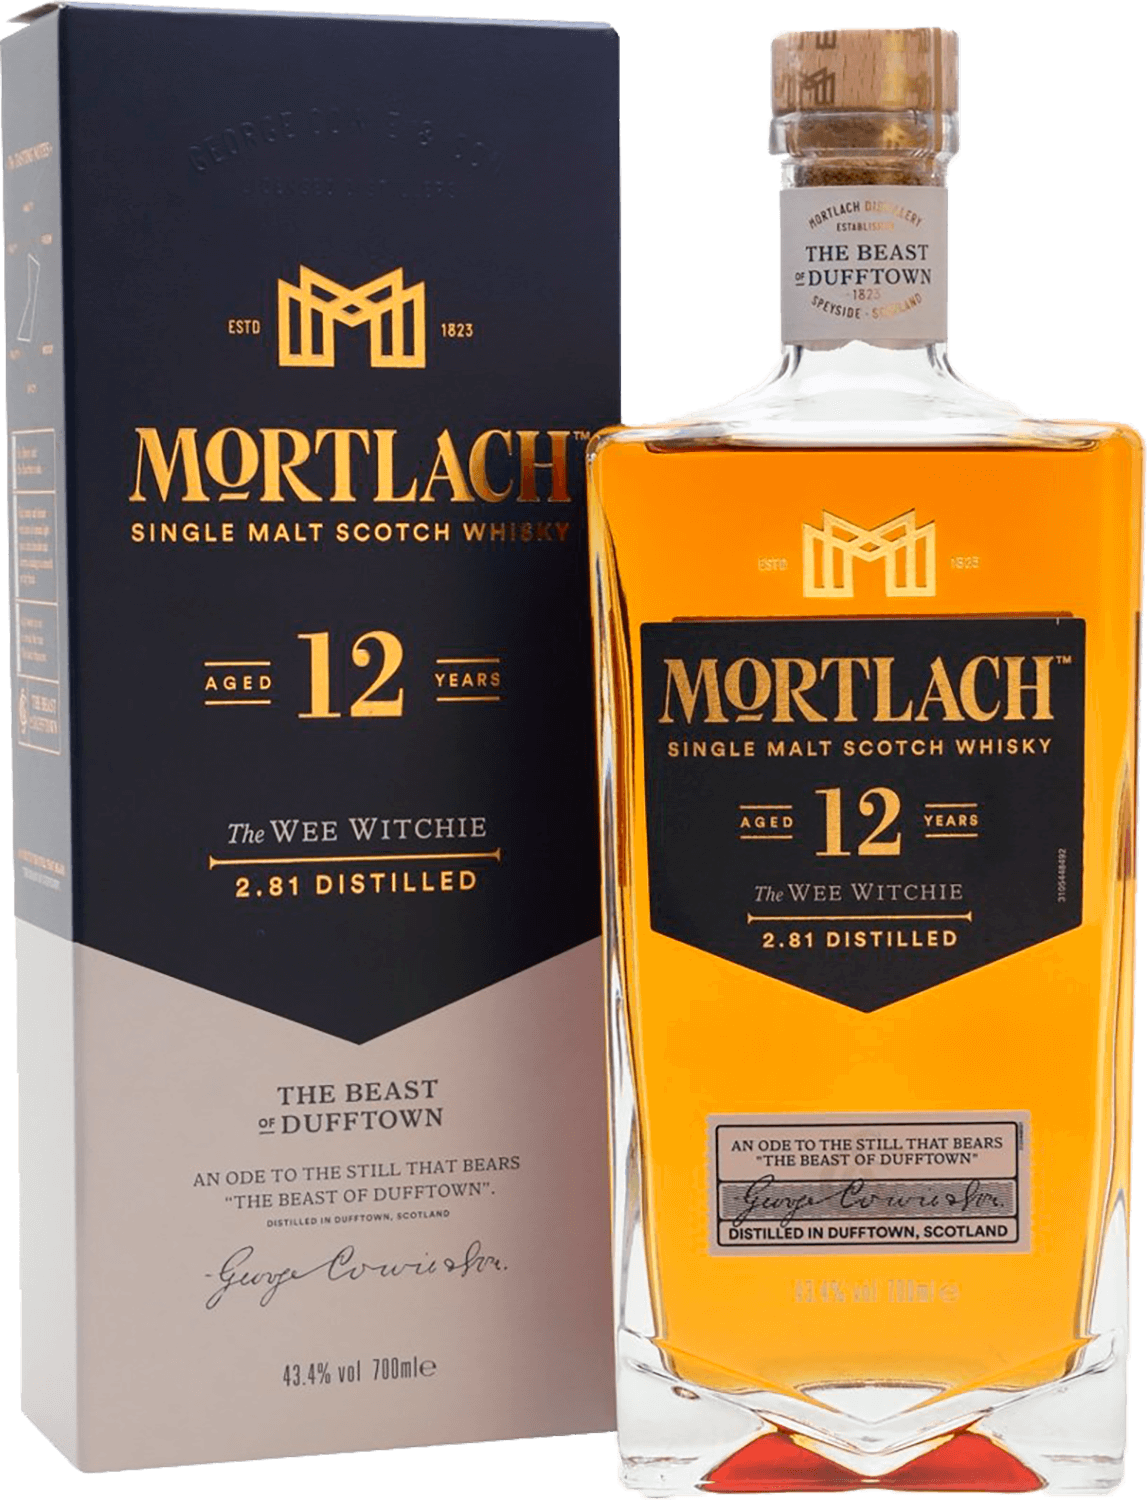 Mortlach 12 y.o. Single Malt Scotch Whisky (gift box)